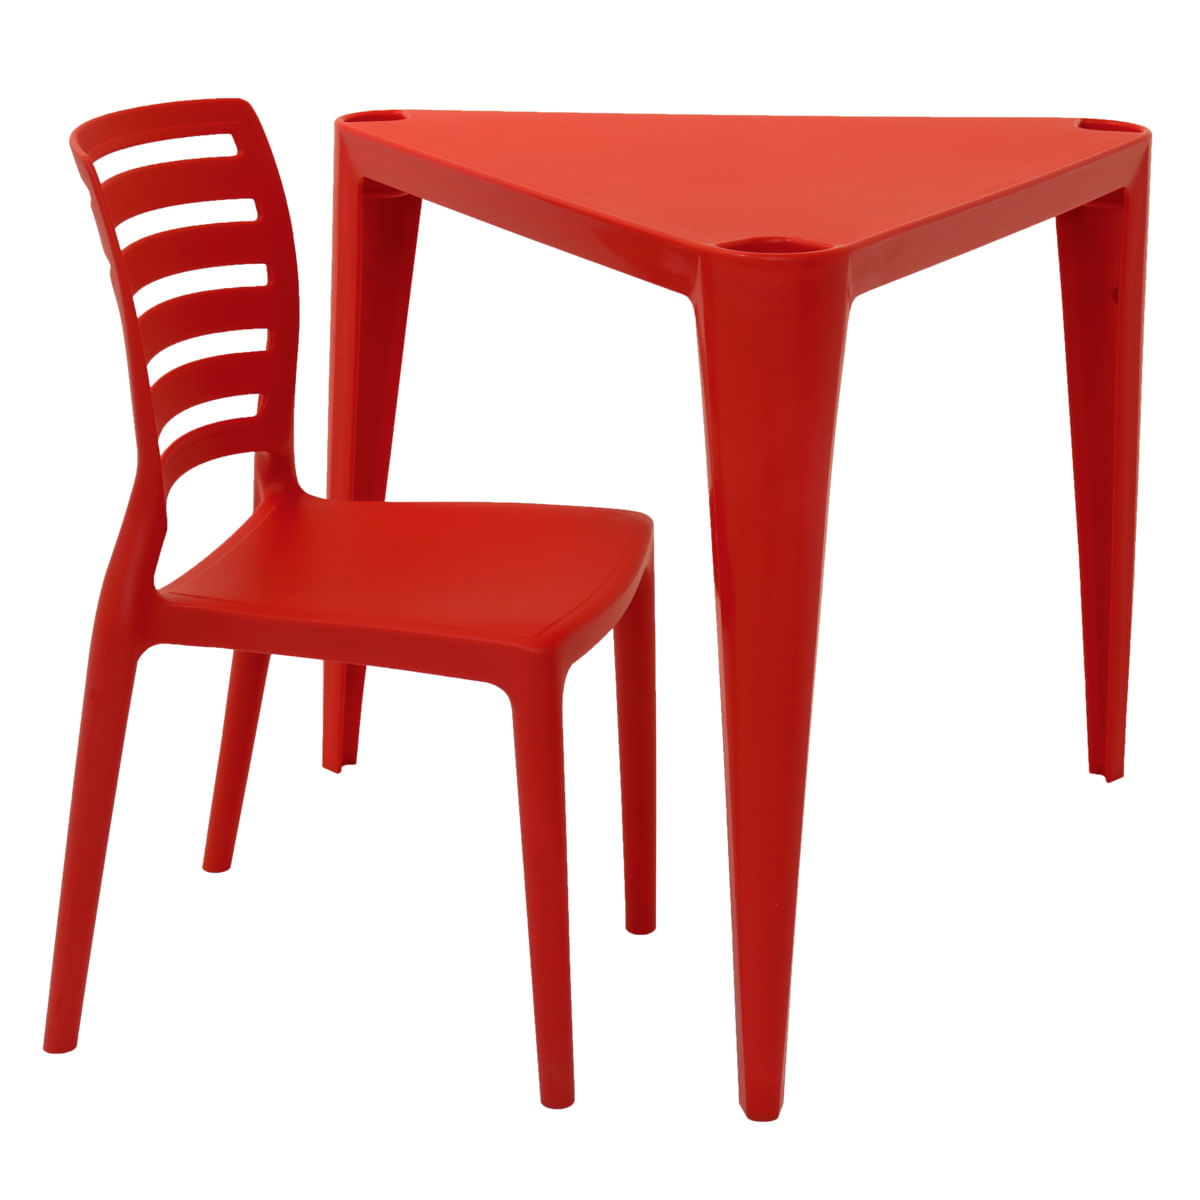 Conjunto de Mesa e Cadeira Tramontina Sofia Infantil Vermelho em Polipropileno e Fibra de Vidro 2 Peças